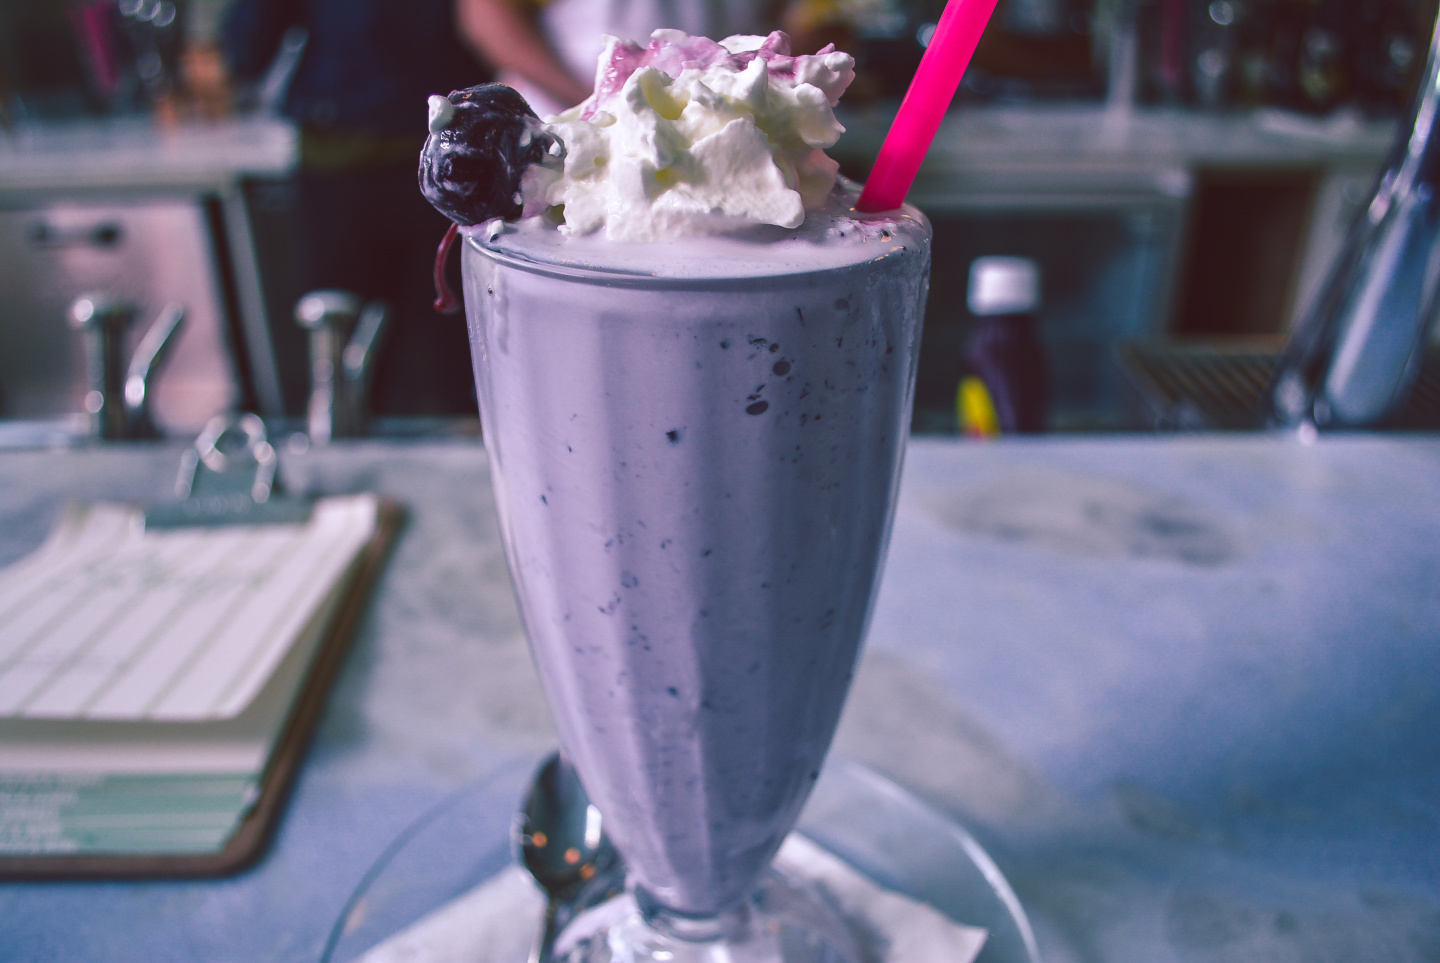 blueberry milkshake